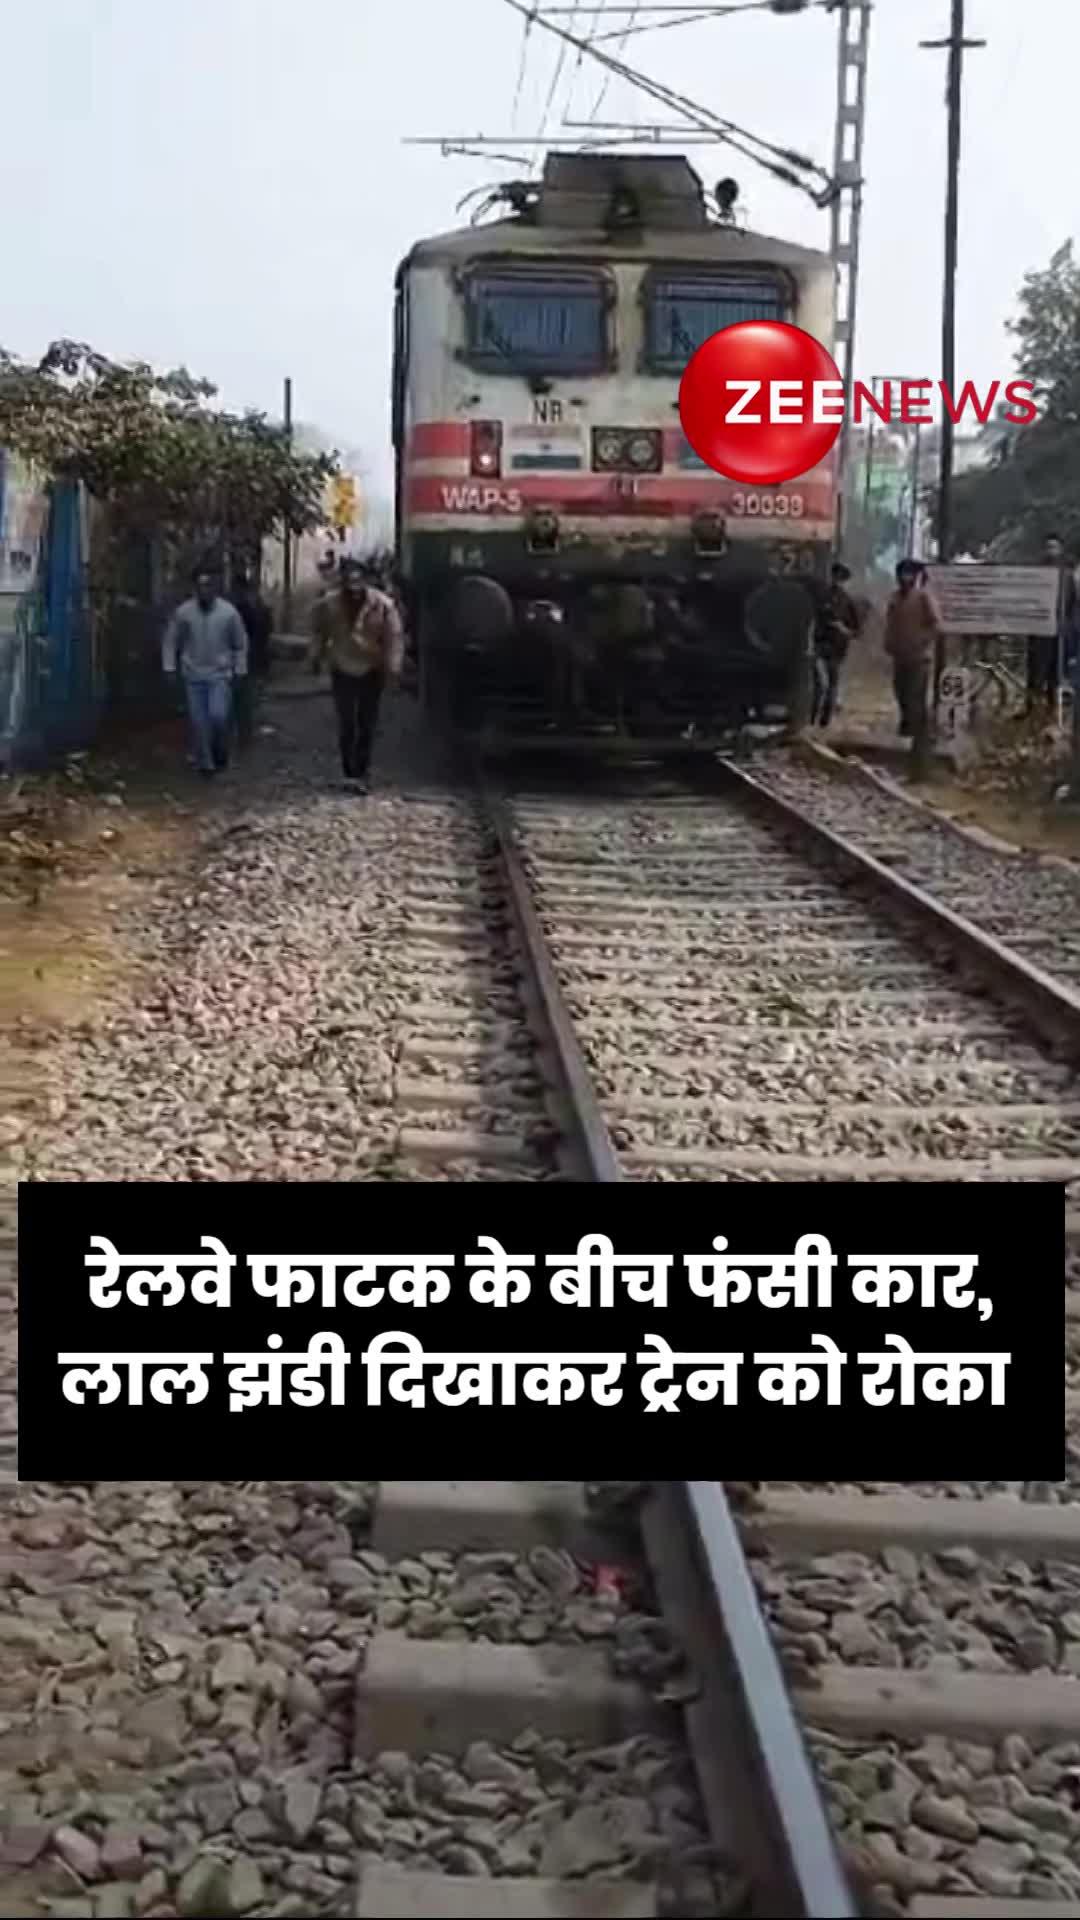 चंदौसी: रेलवे फाटक के बीच फंसी कार, लाल झंडी दिखाकर ट्रेन को रोका